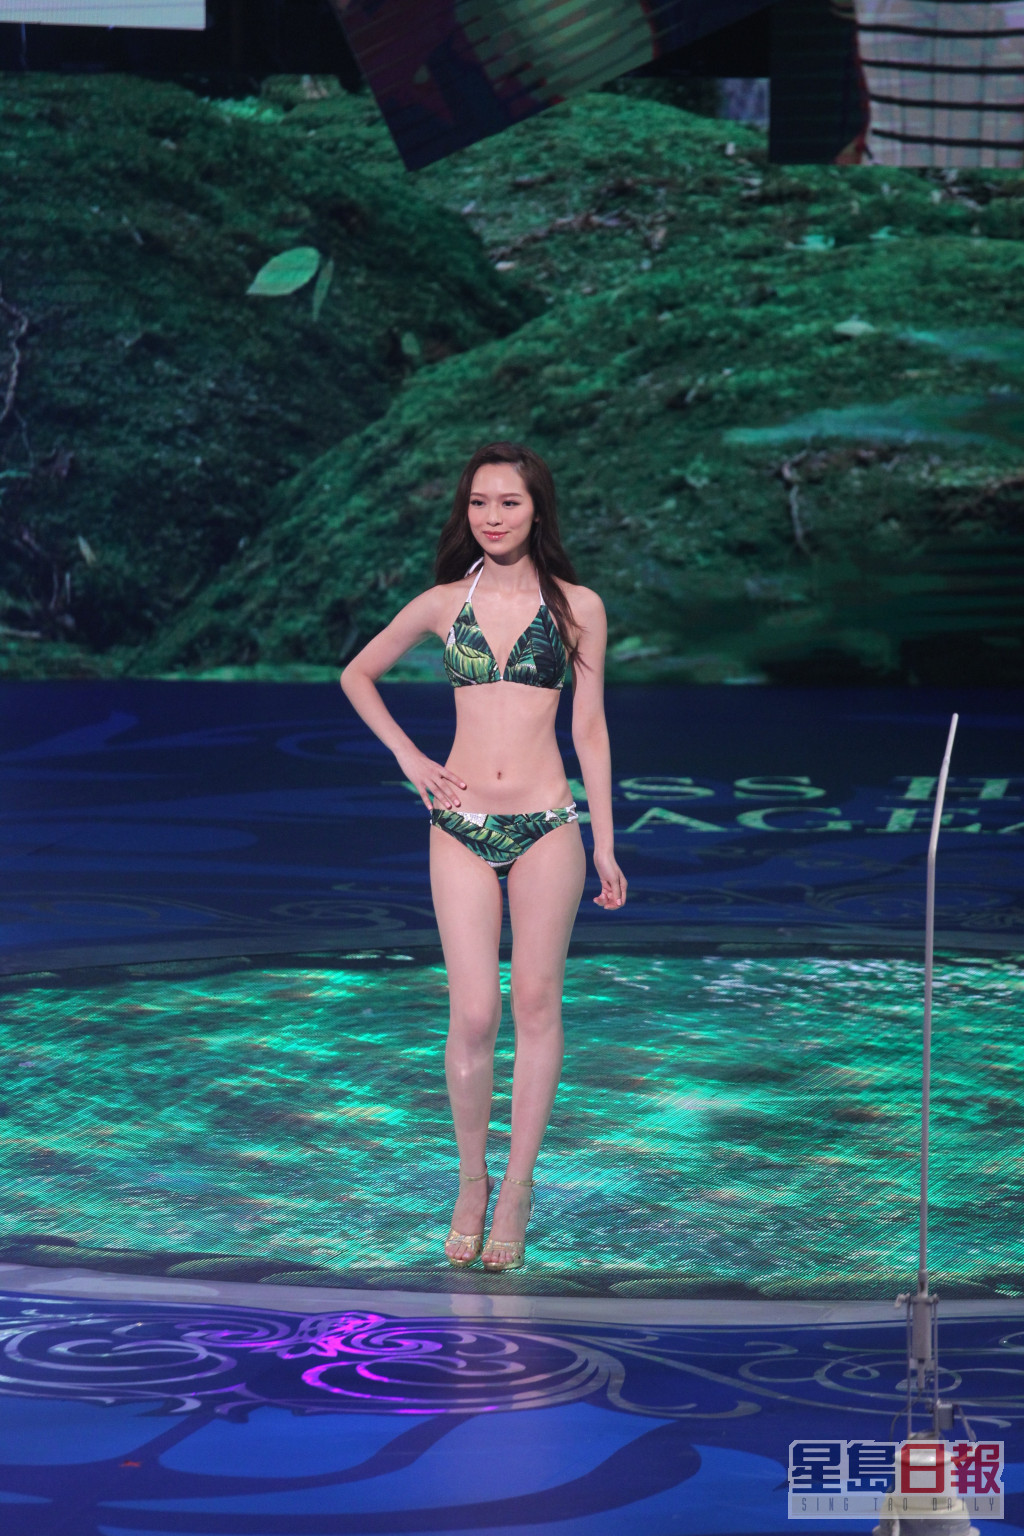 2016年港姐泳裝亦是綠色為主題。